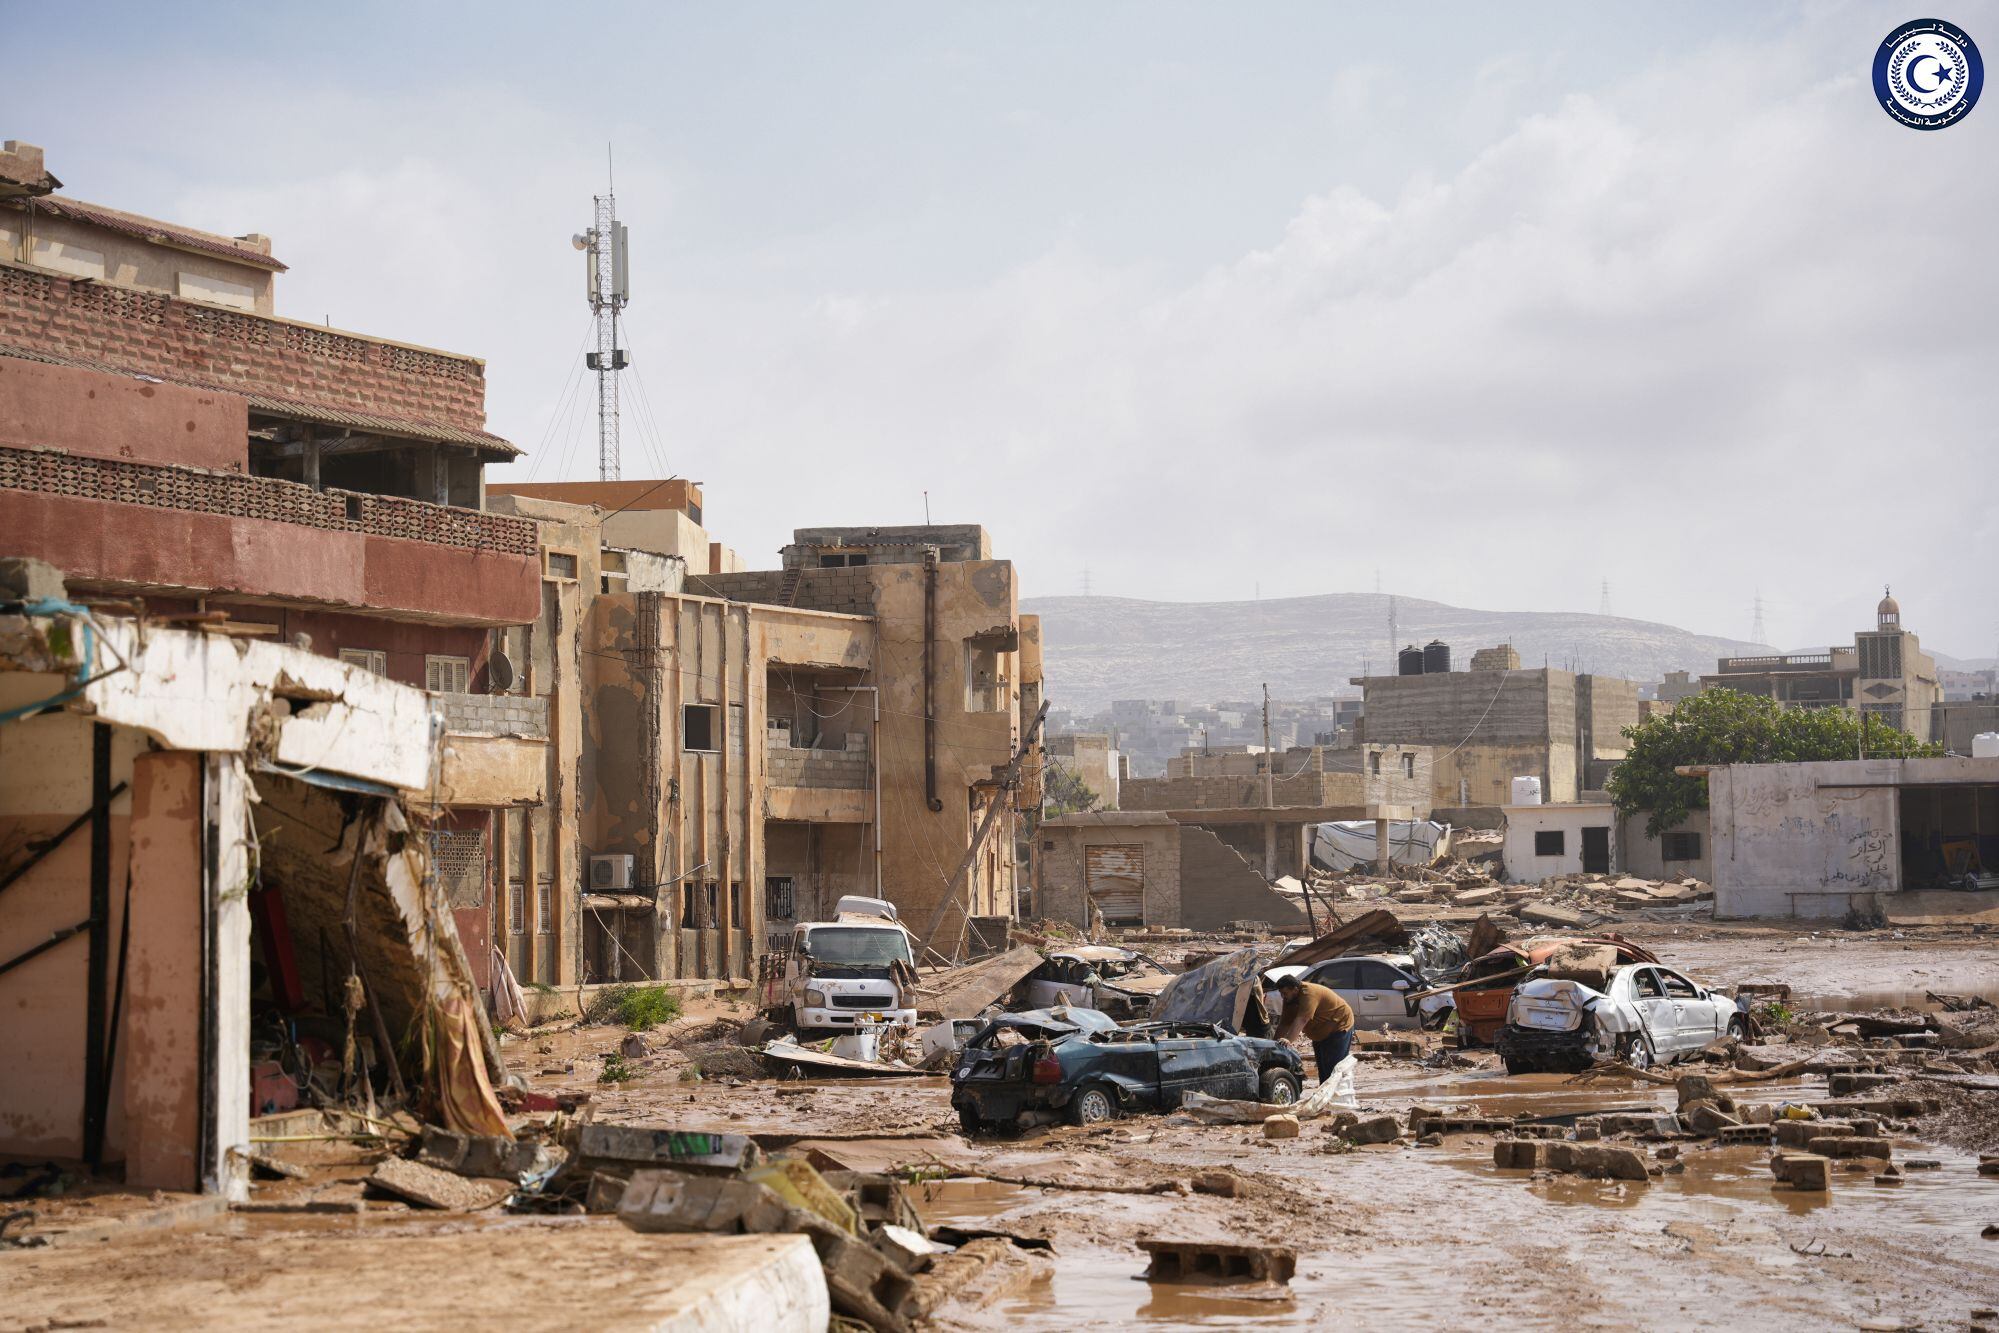 Las inundaciones en Derna, Libia, han dejado más de 6000 muertos y miles de desaparecidos (Foto: Europa Press)
